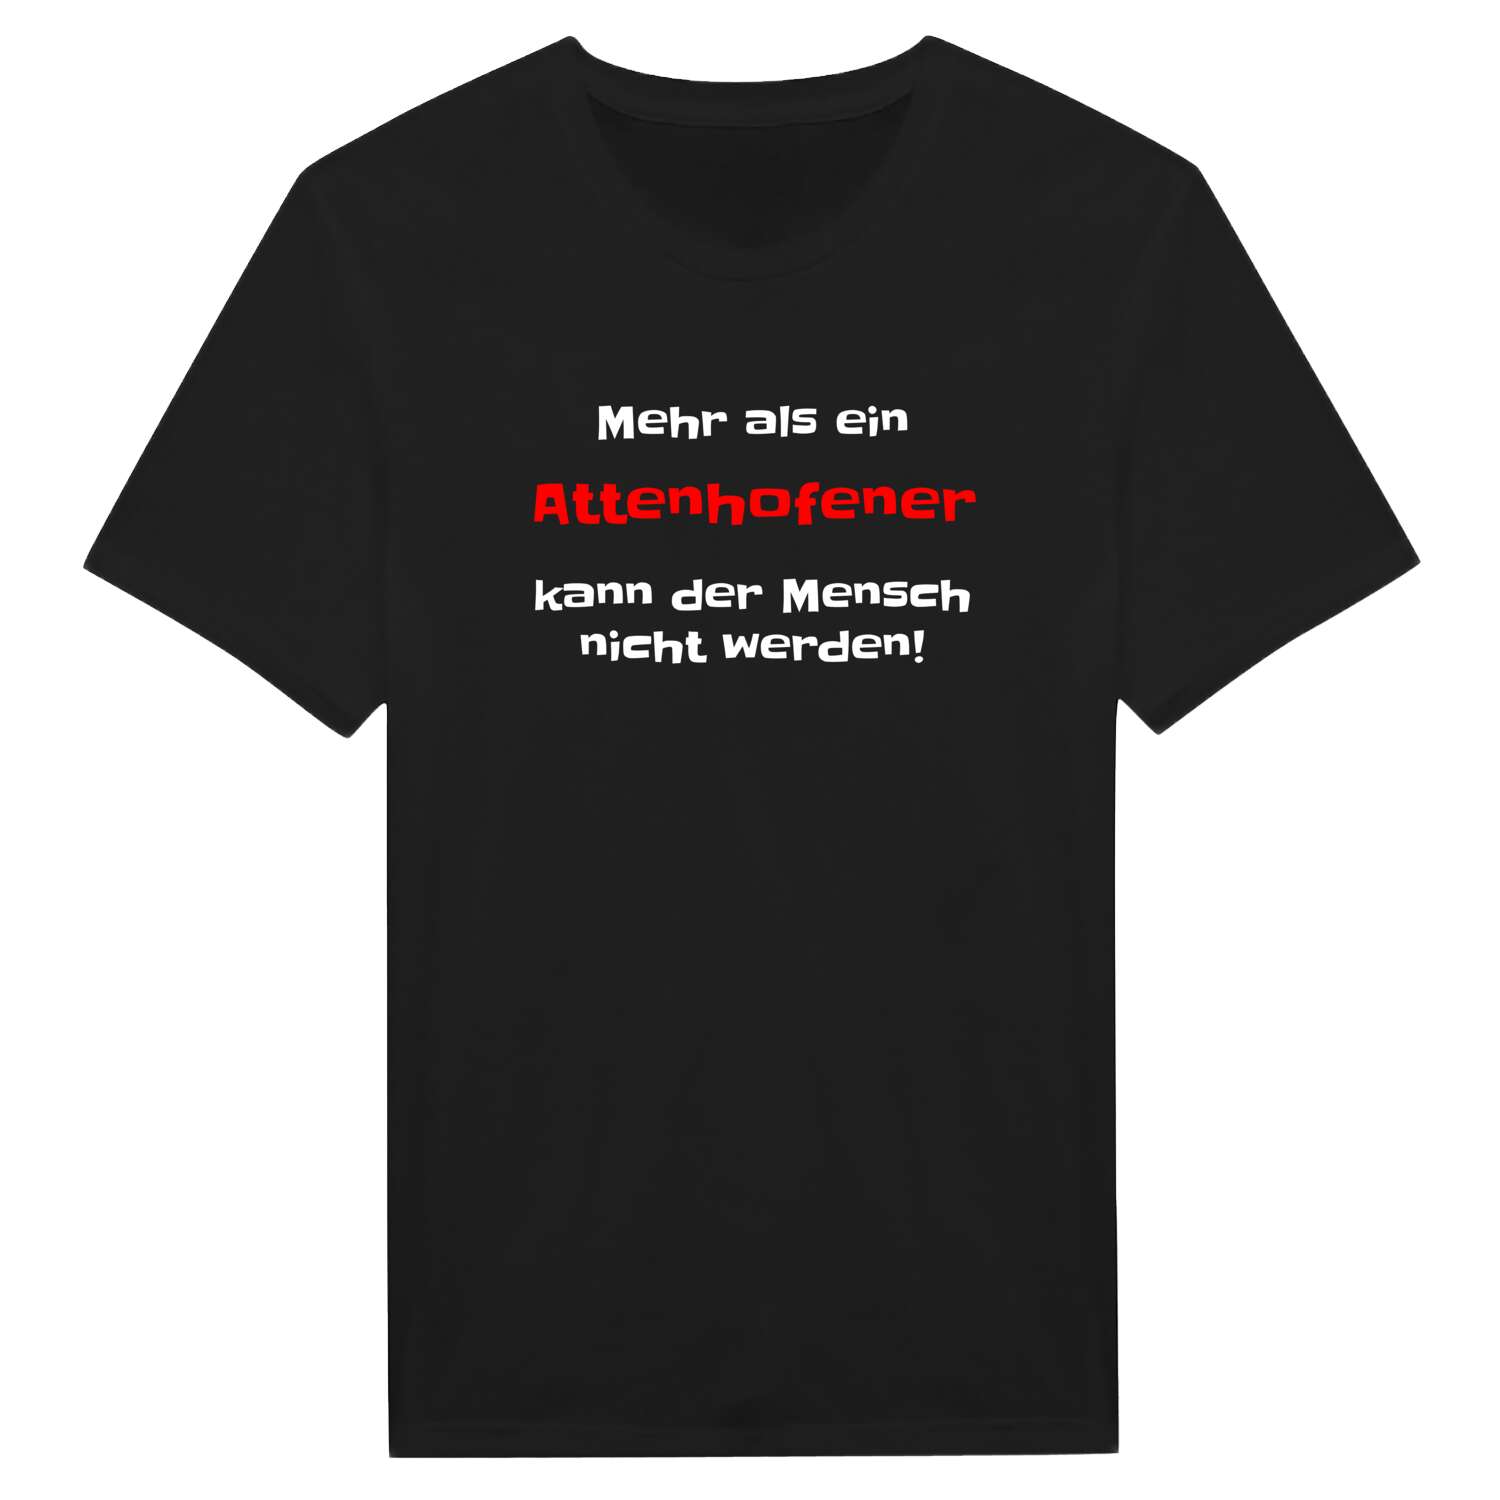 Attenhofen T-Shirt »Mehr als ein«